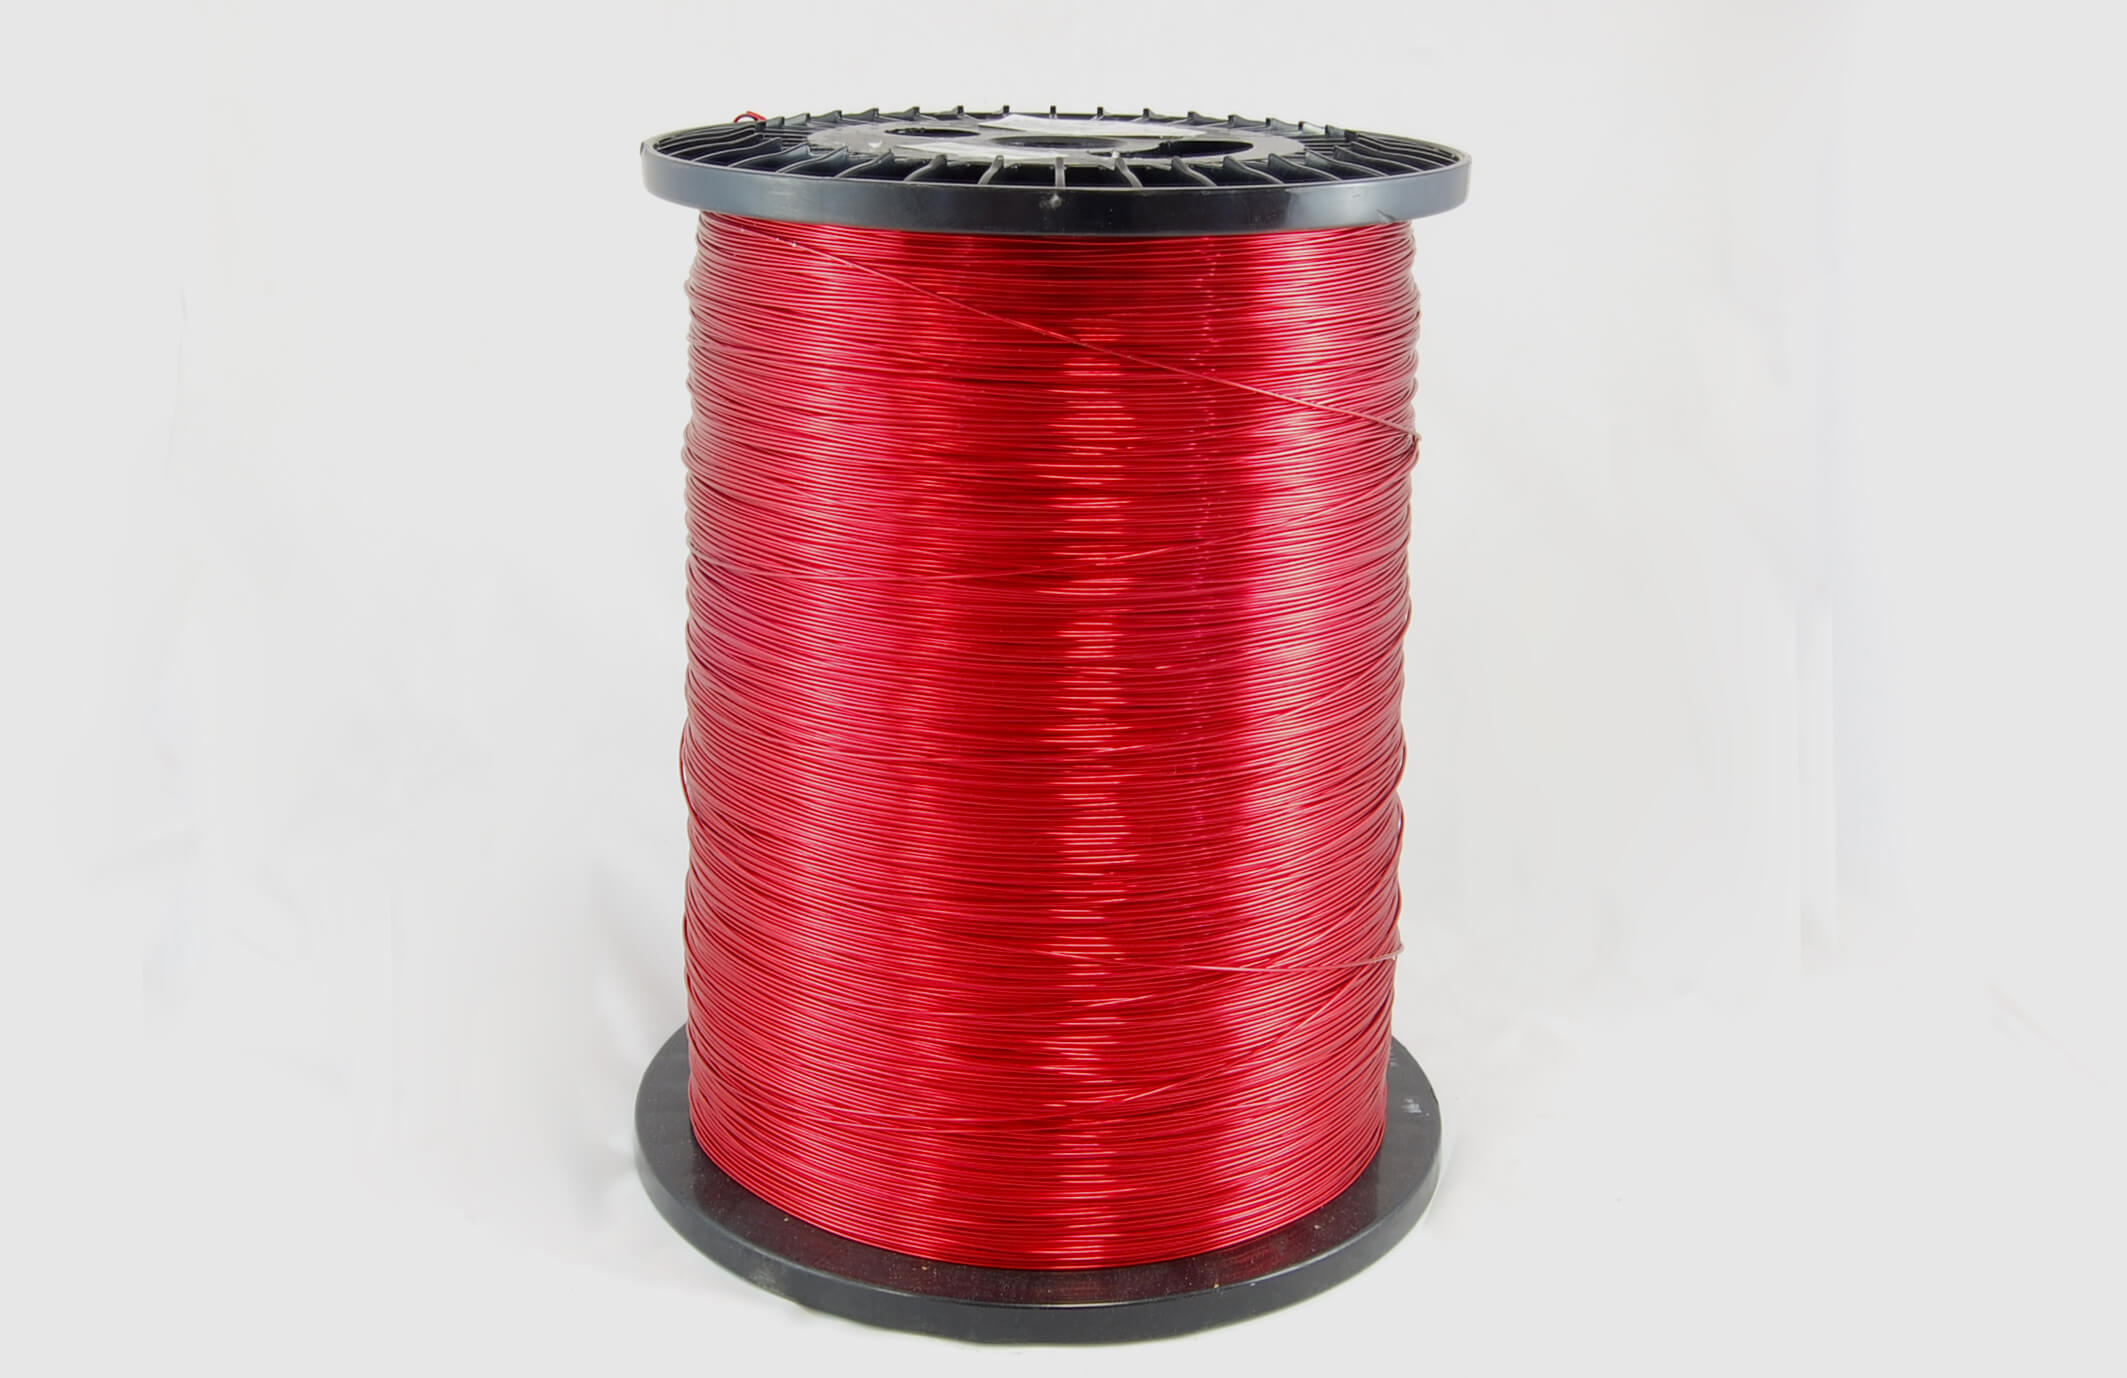 #20 Heavy Nysol  Round HNSR MW 80 Copper Magnet Wire 155°C, red, 85 LB box (average wght.)